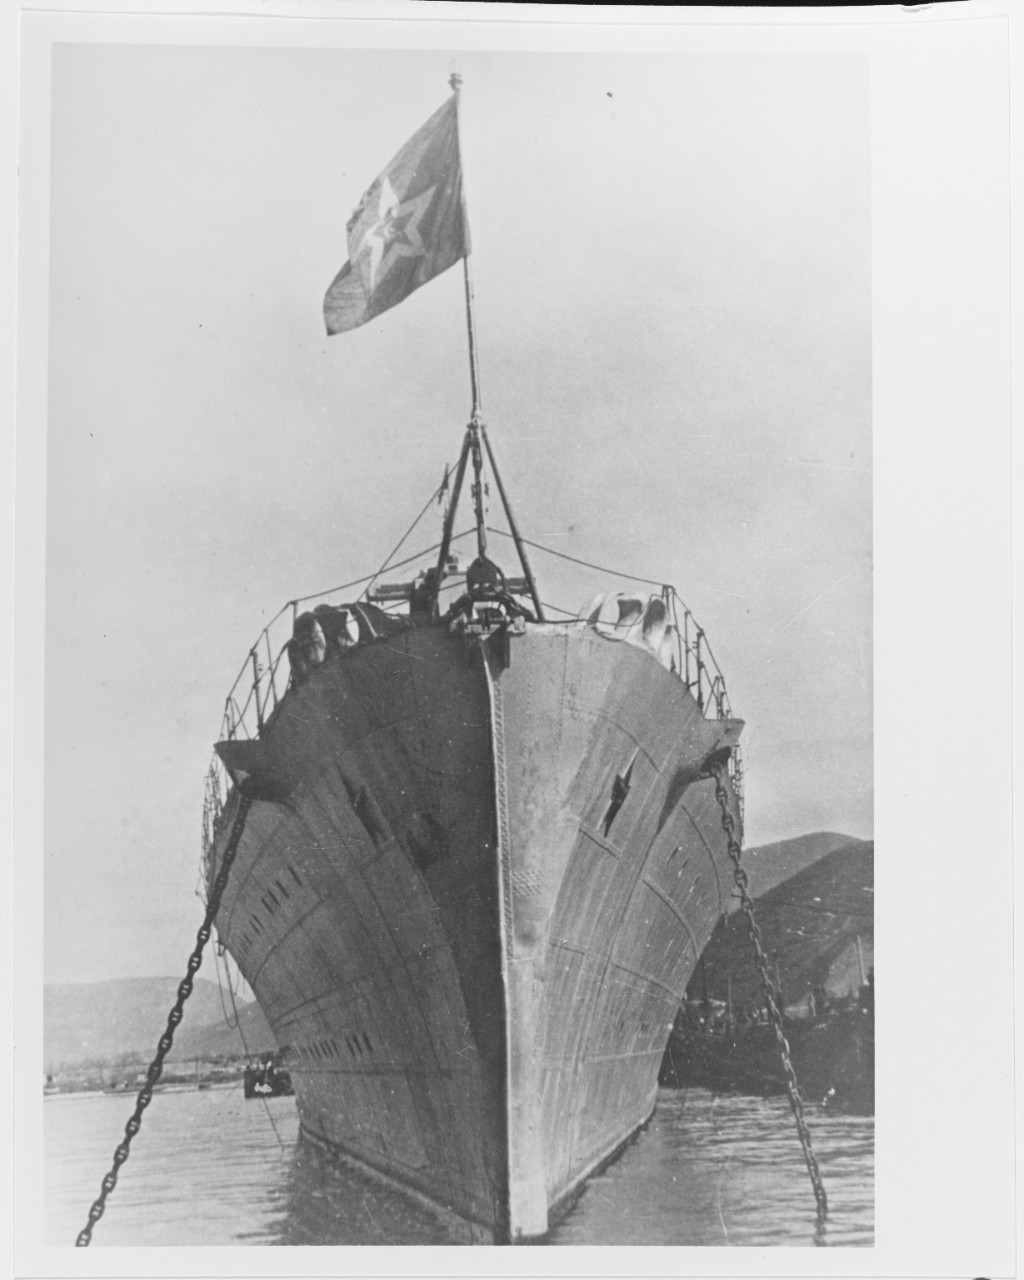 Bow deck view of a Soviet KIROV class heavy cruiser during World War II.